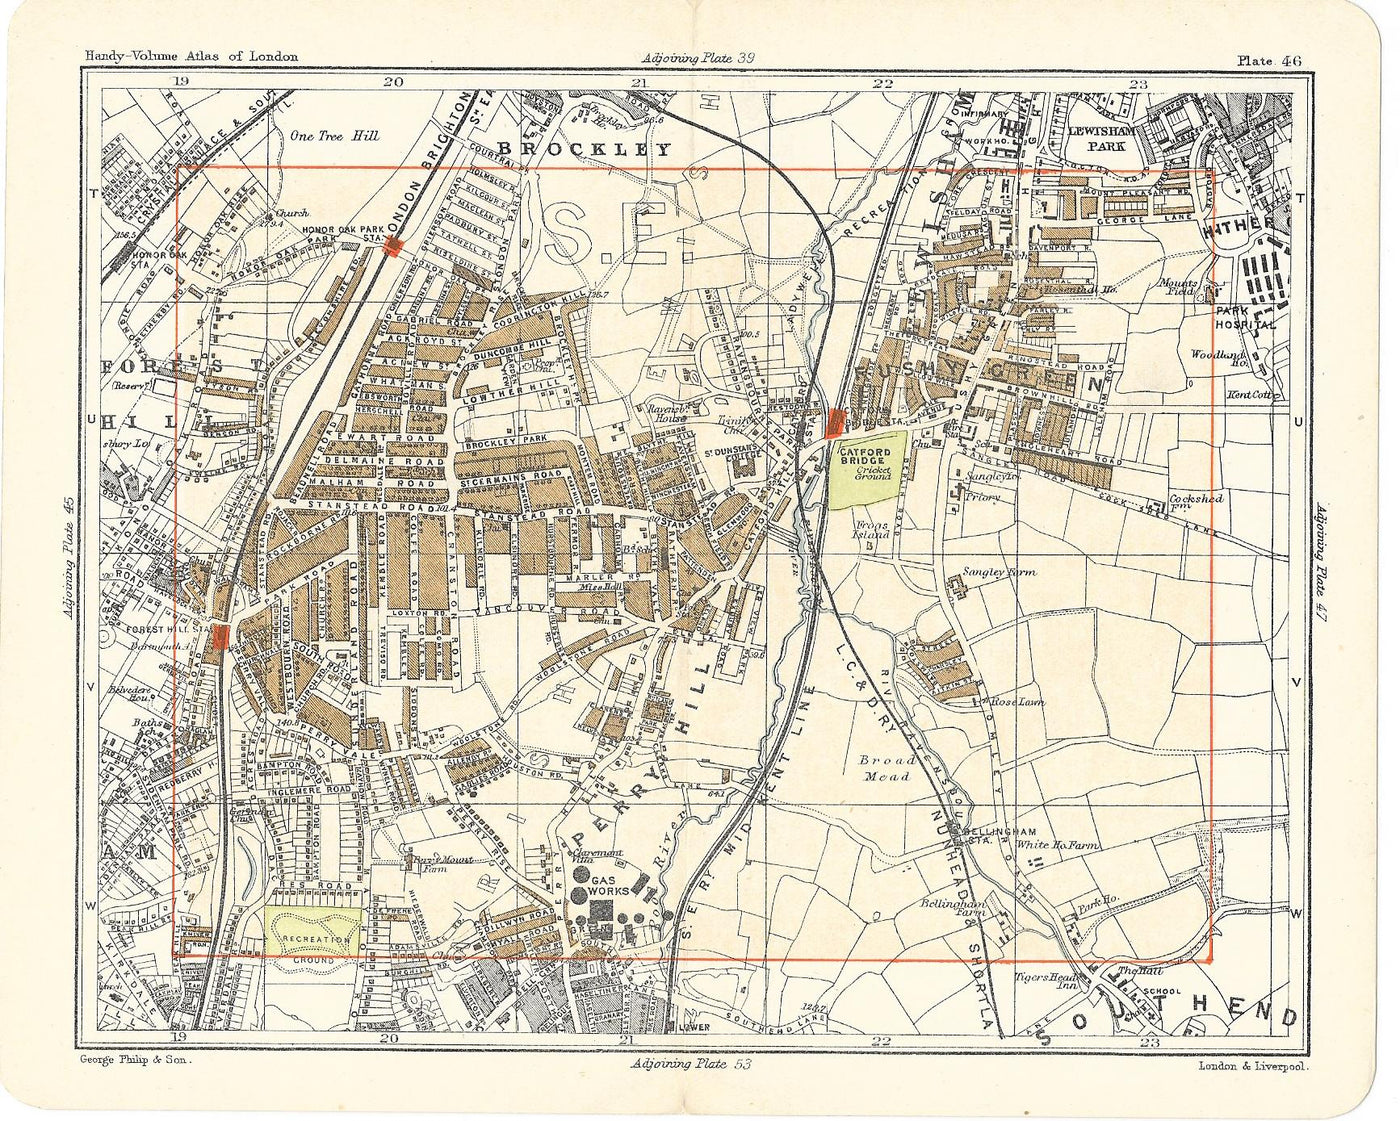 Lewisham Catford Bridge antique map